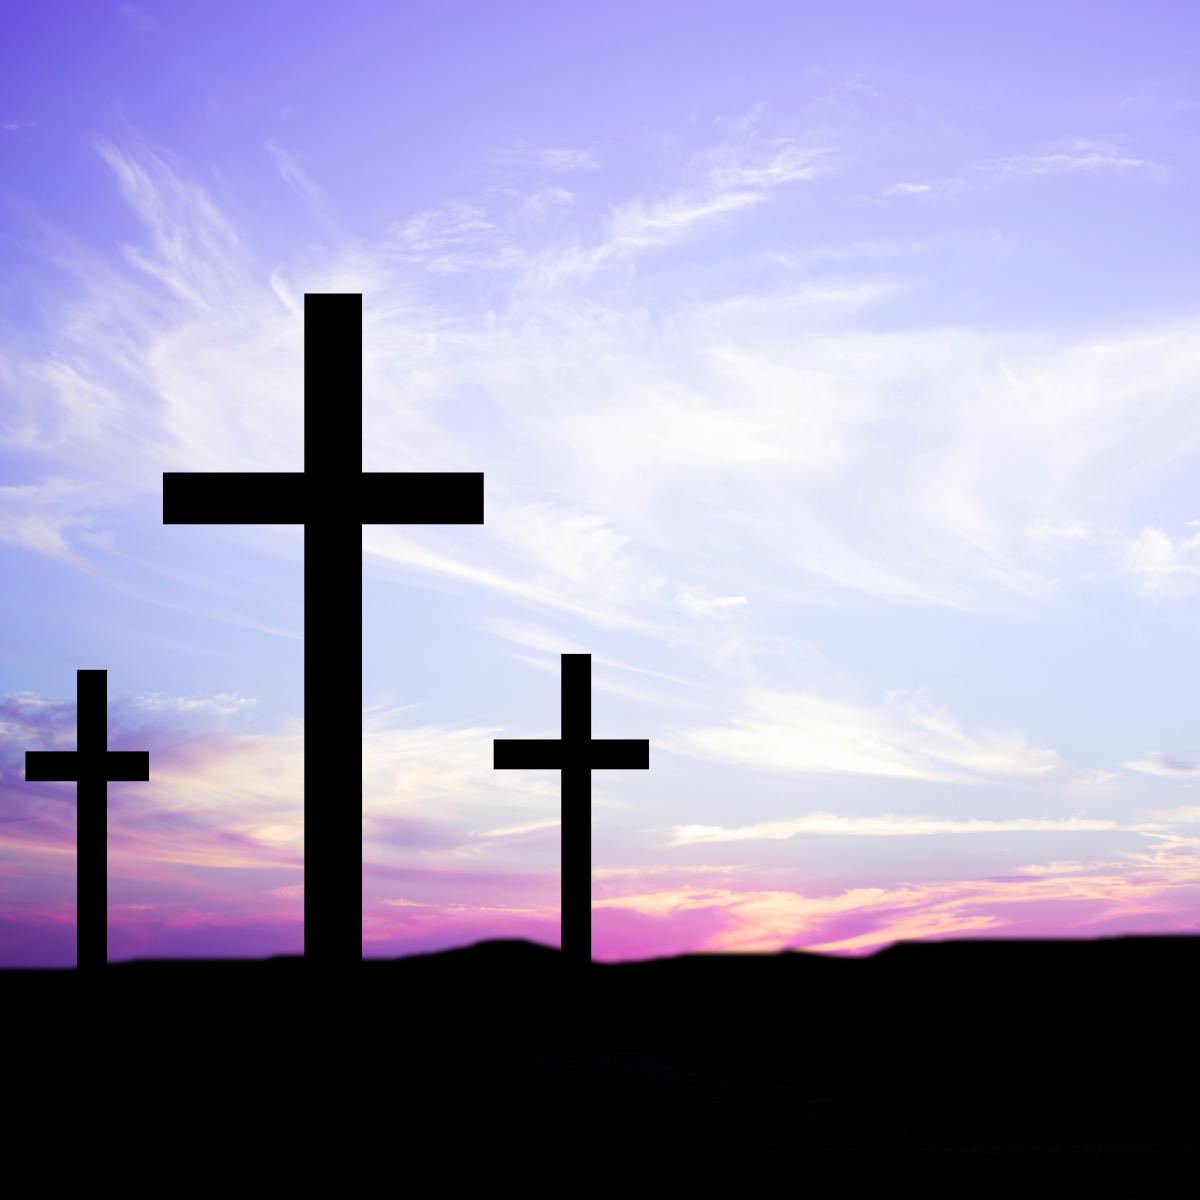 three crosses backlit on a purple sky